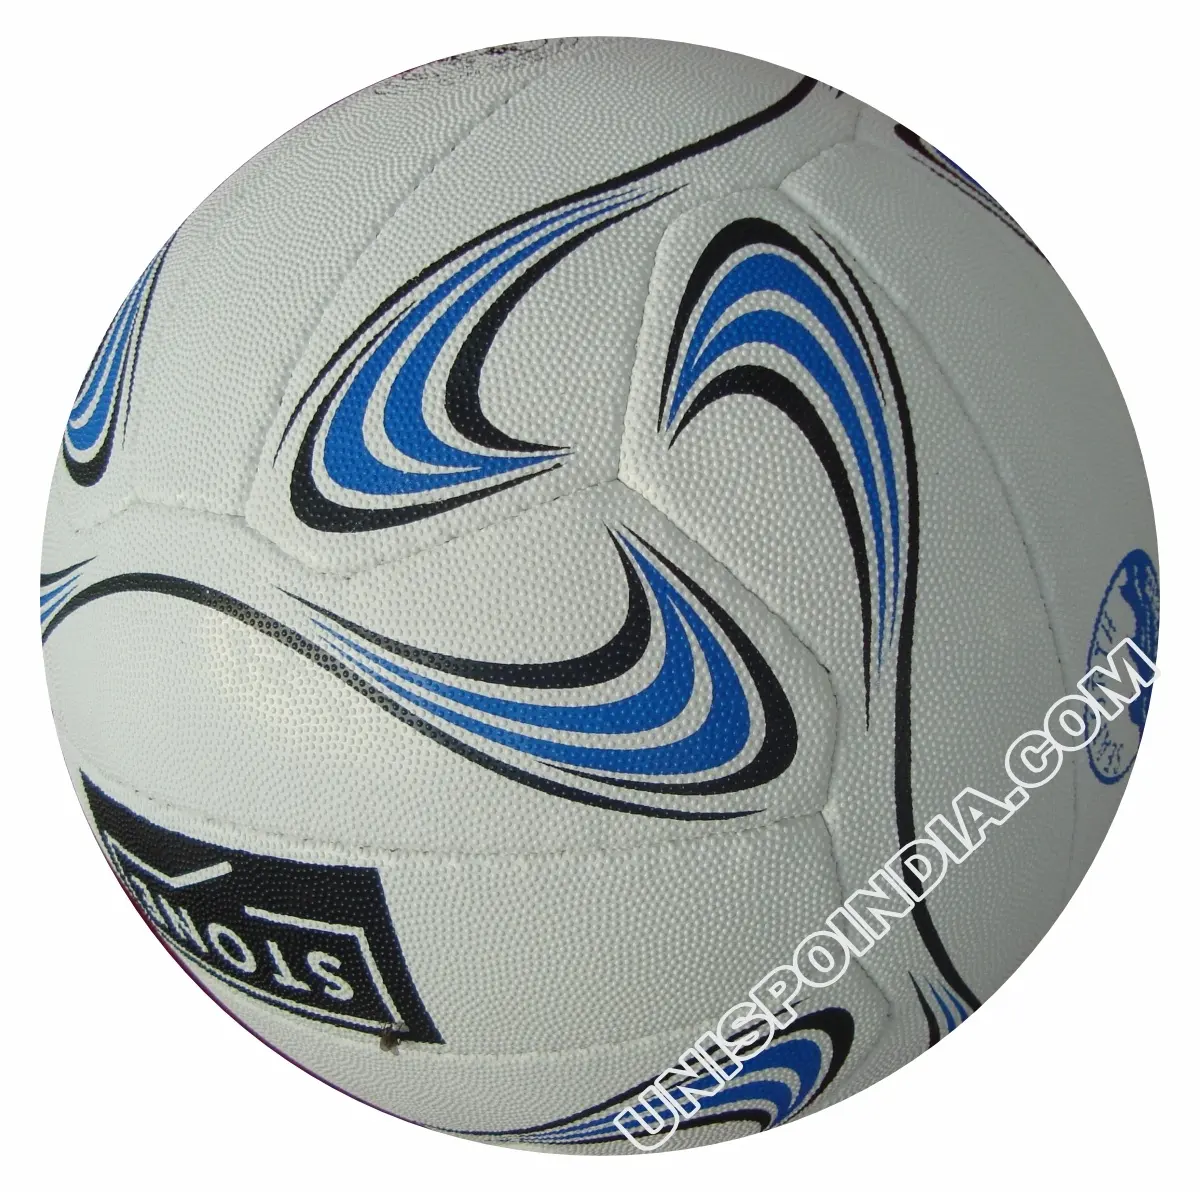 Netball item oficial de alta qualidade, bolas esportivas de qualidade premium, preço razoável